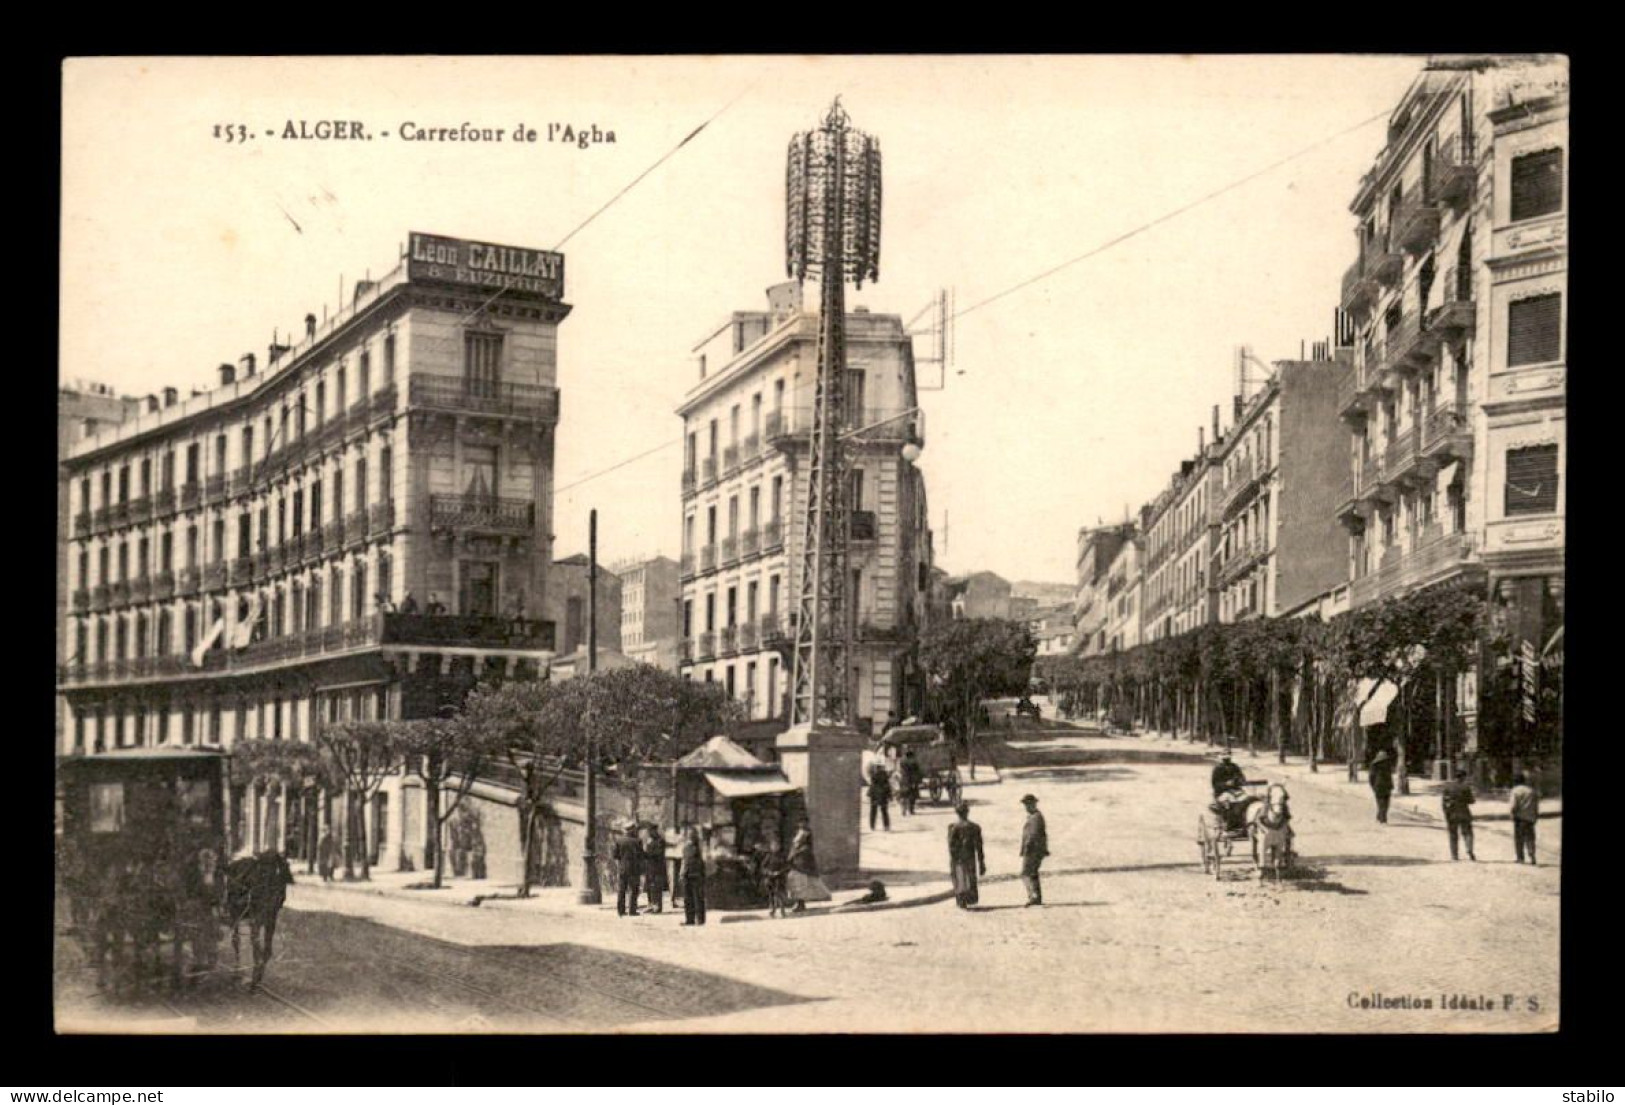 ALGERIE - ALGER - CARREFOUR DE L'AGHA - Algiers